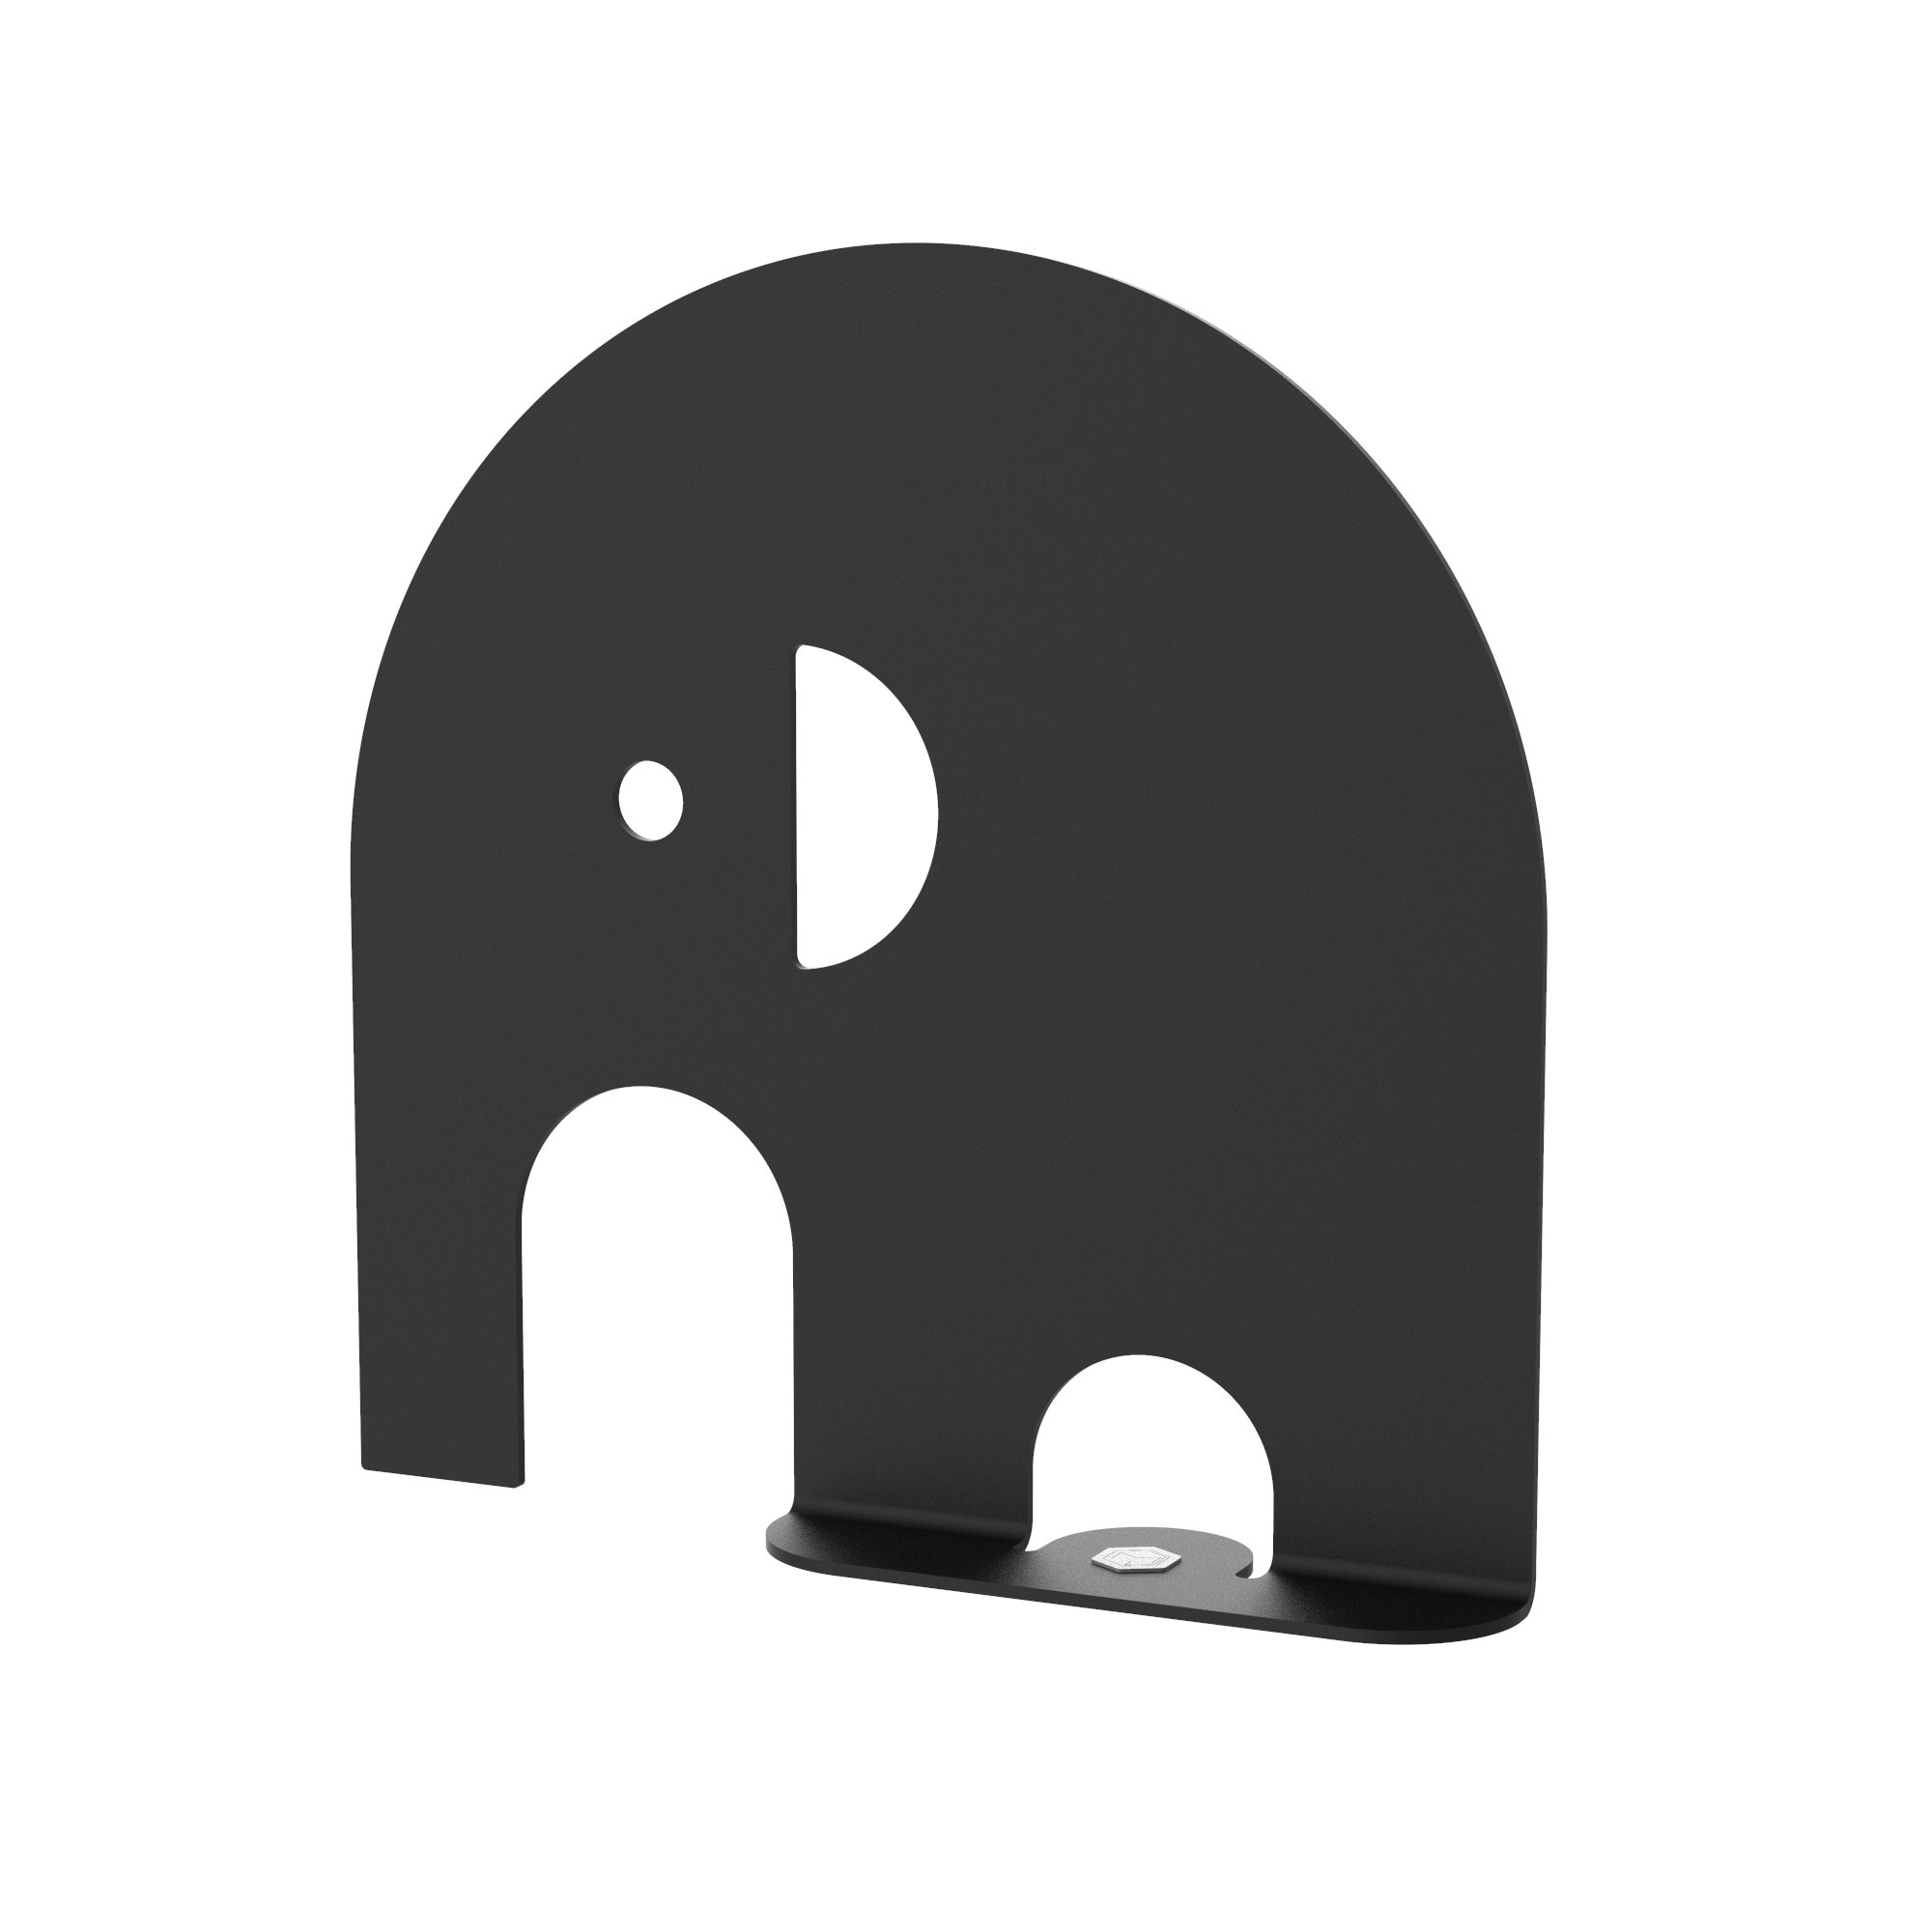 Dekorationsfigur Elefant aus Metall, schwarz, Höhe 20 cm